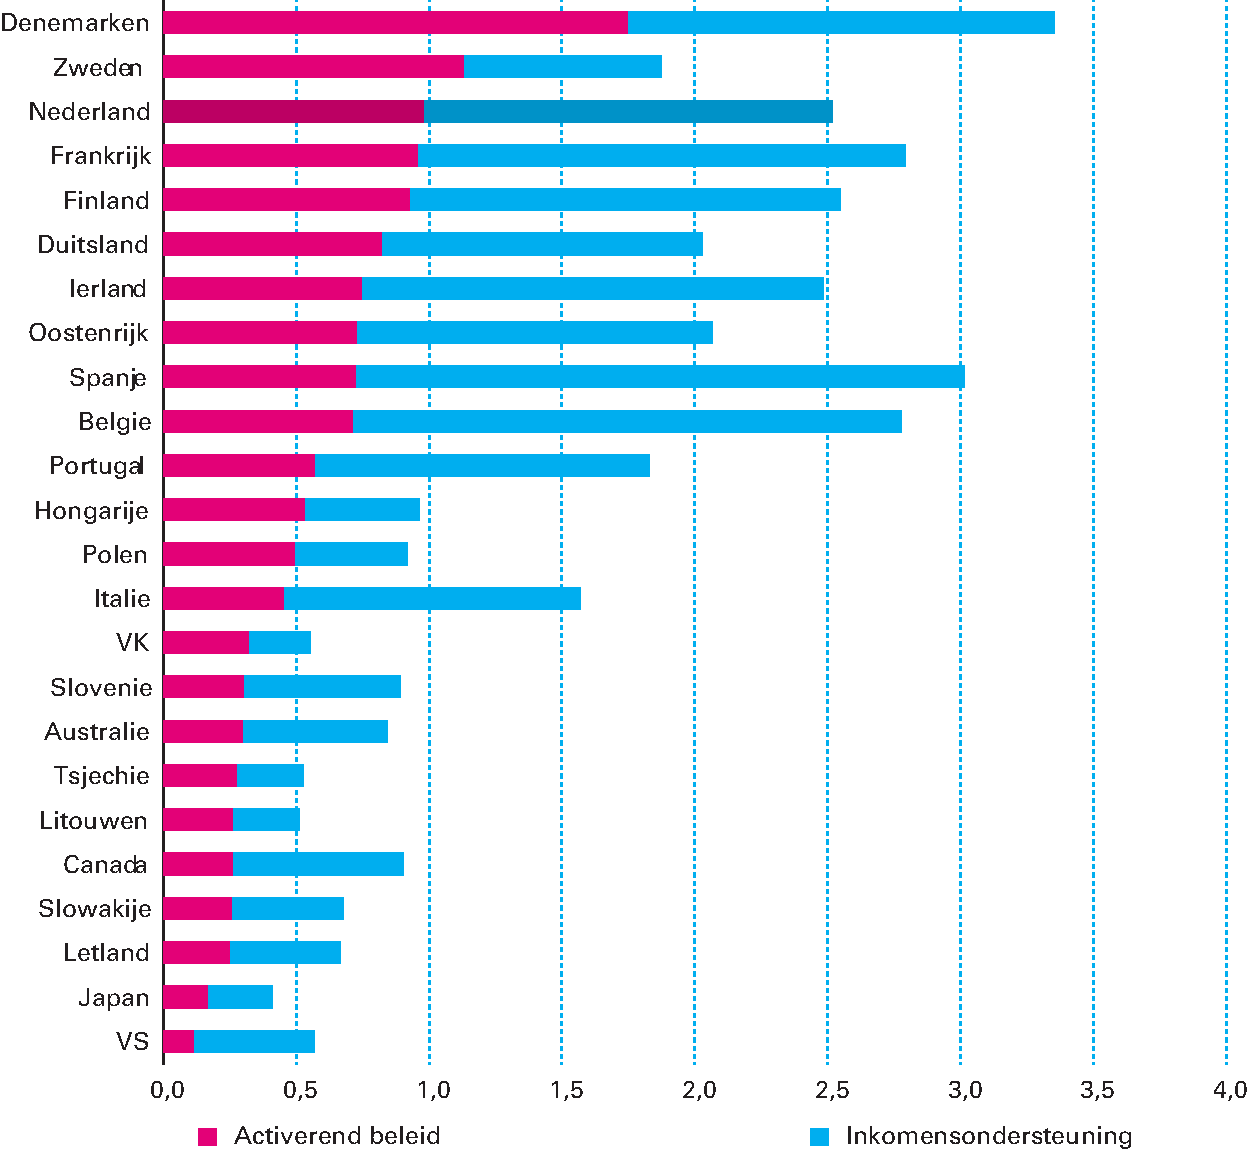 Figuur 2.5.1 Publieke uitgaven aan activerend arbeidsmarktbeleid (blauw) en inkomensondersteuning (rood) voor mensen die geen baan hebben (als percentage bbp)